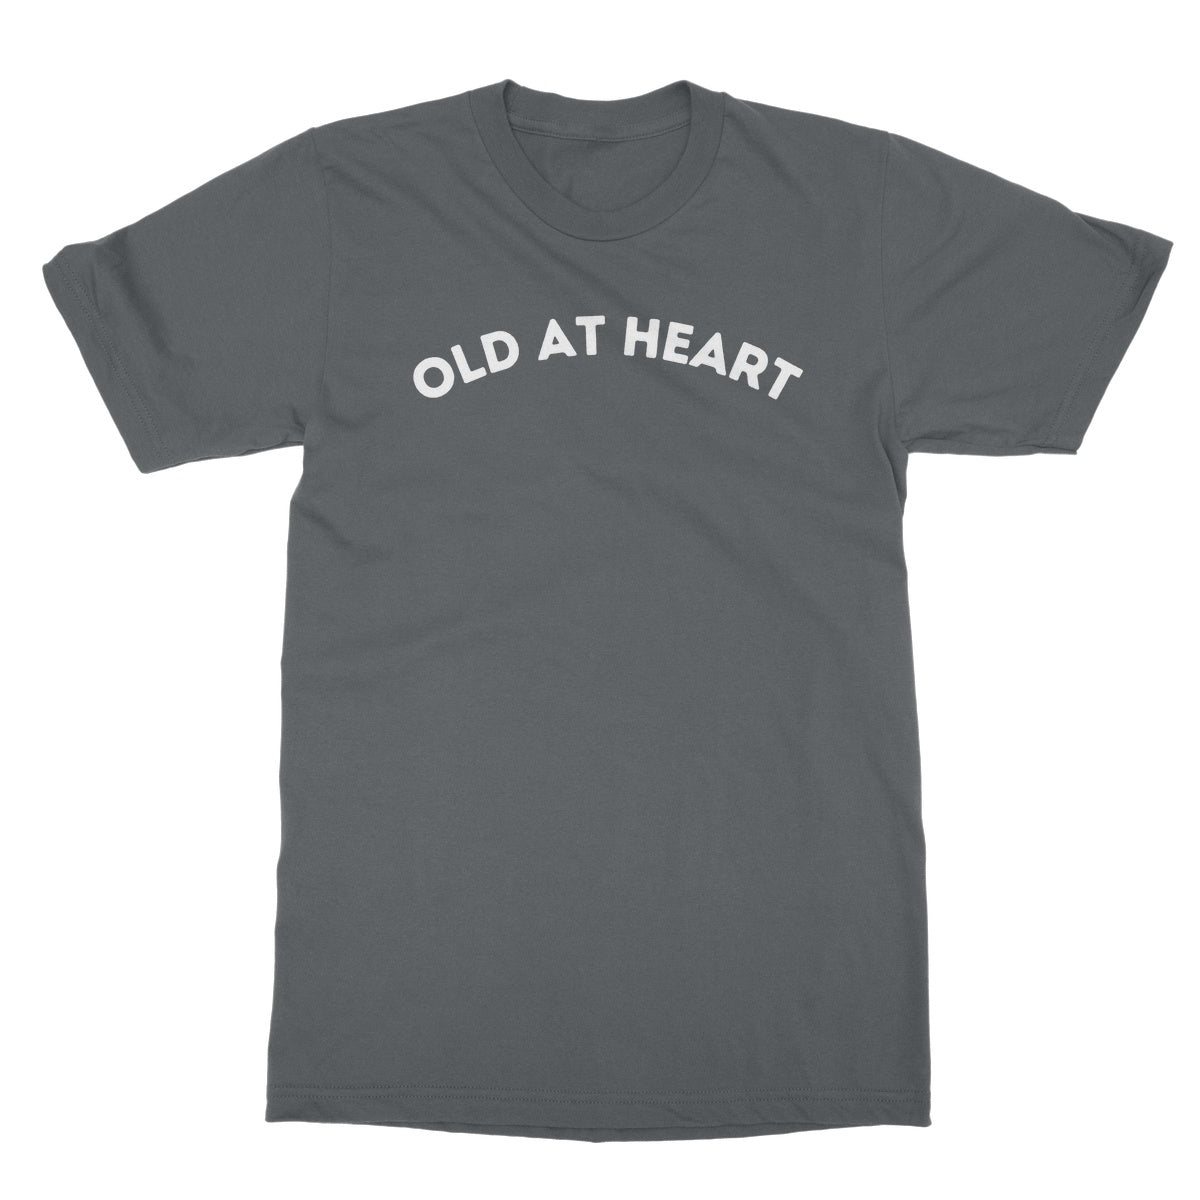 old at heart t shirt grey